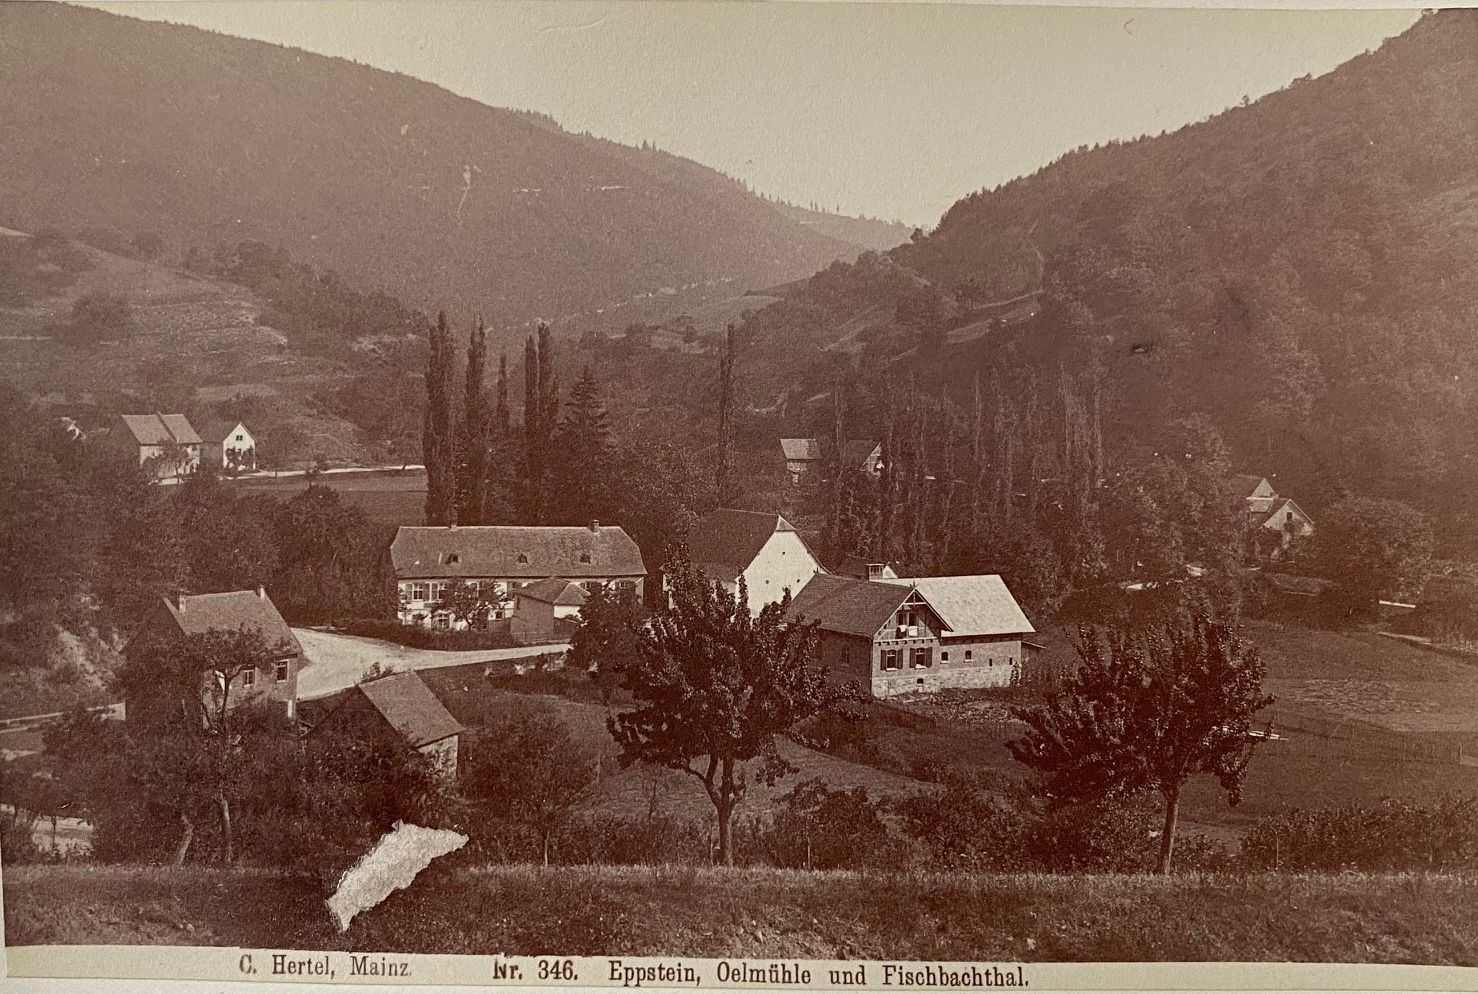 Fotografie, Carl Hertel No. 346, Eppstein und Fischbachthal Fischbach, ca. 1885 (Taunus-Rhein-Main - Regionalgeschichtliche Sammlung Dr. Stefan Naas CC BY-NC-SA)